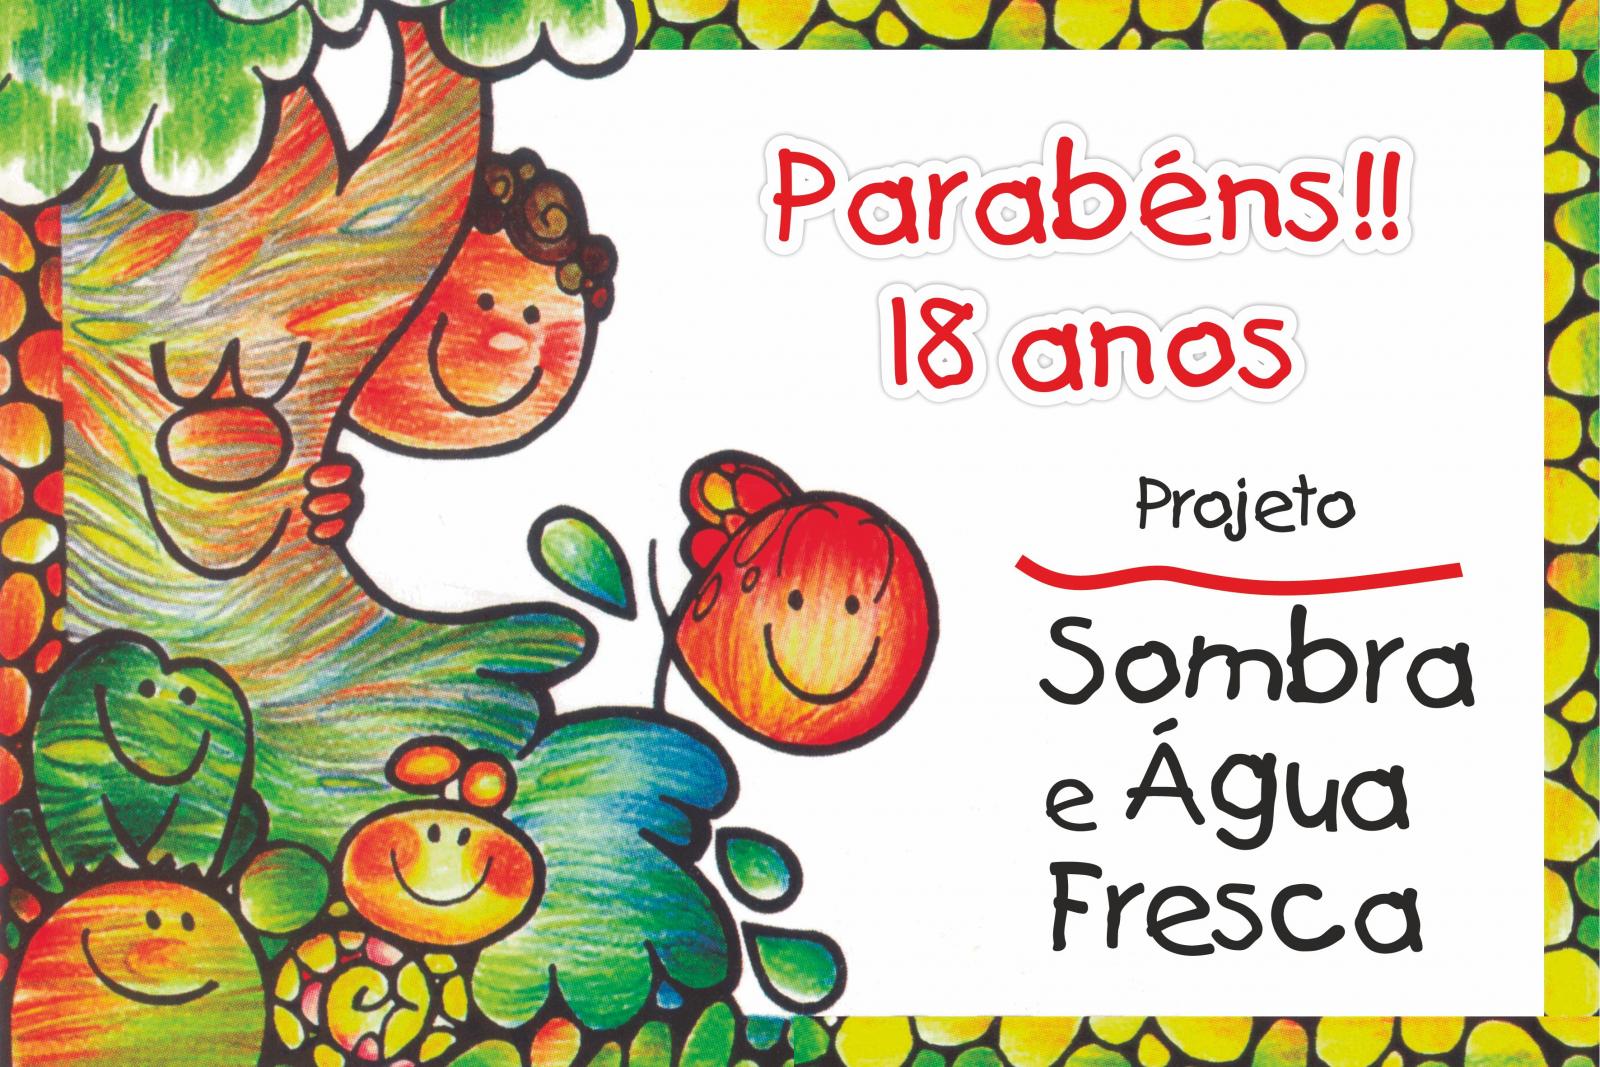 Projeto Sombra e gua Fresca (SAF) celebra 18 anos em outubro